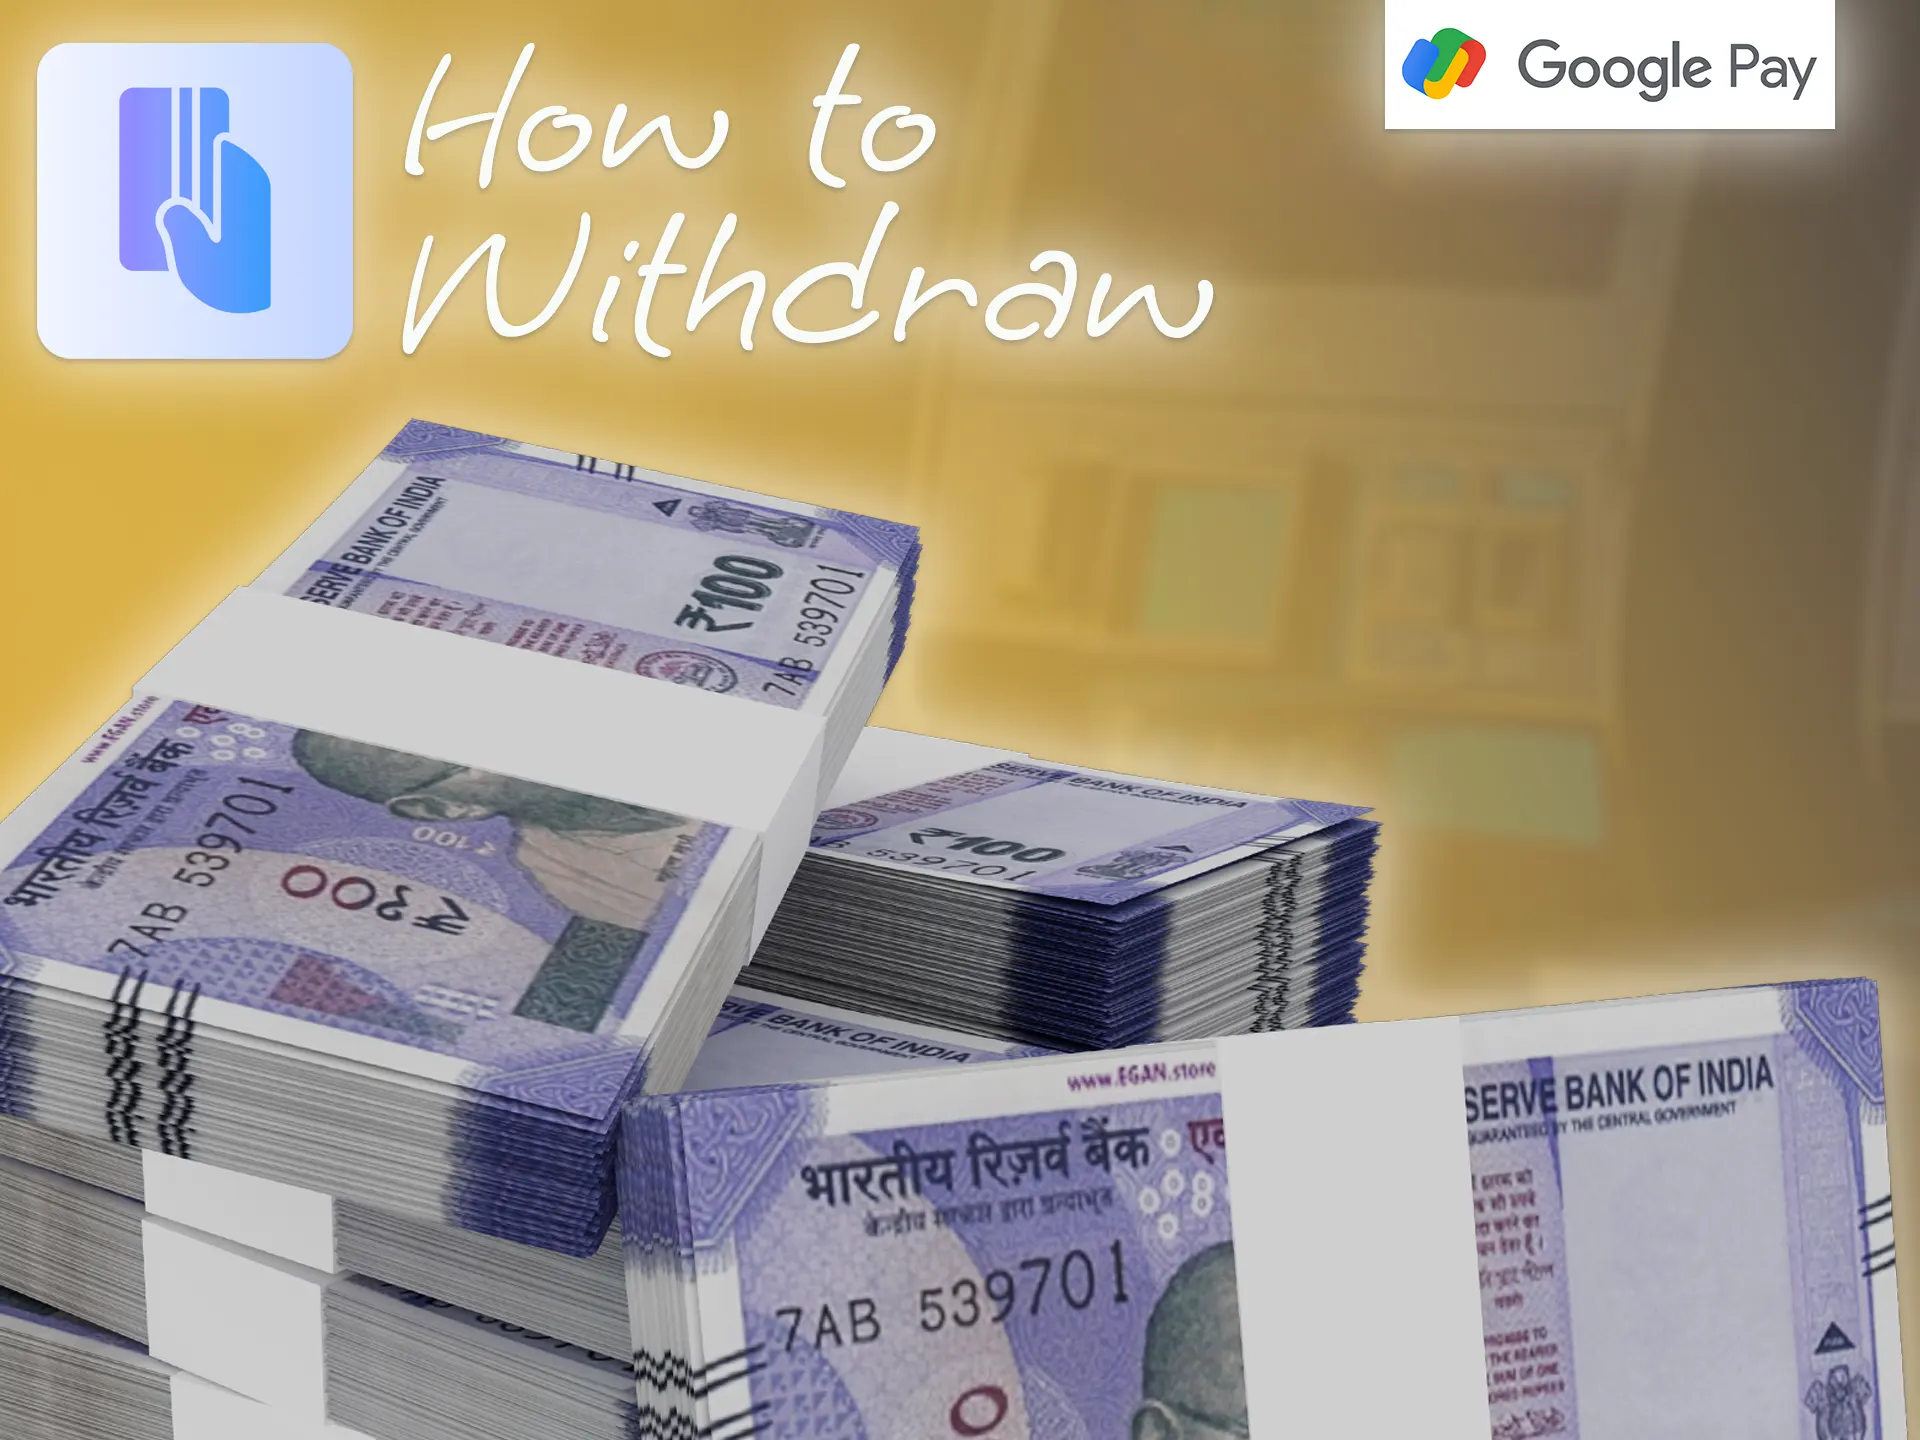 Make a withdrawal using Google Pay.